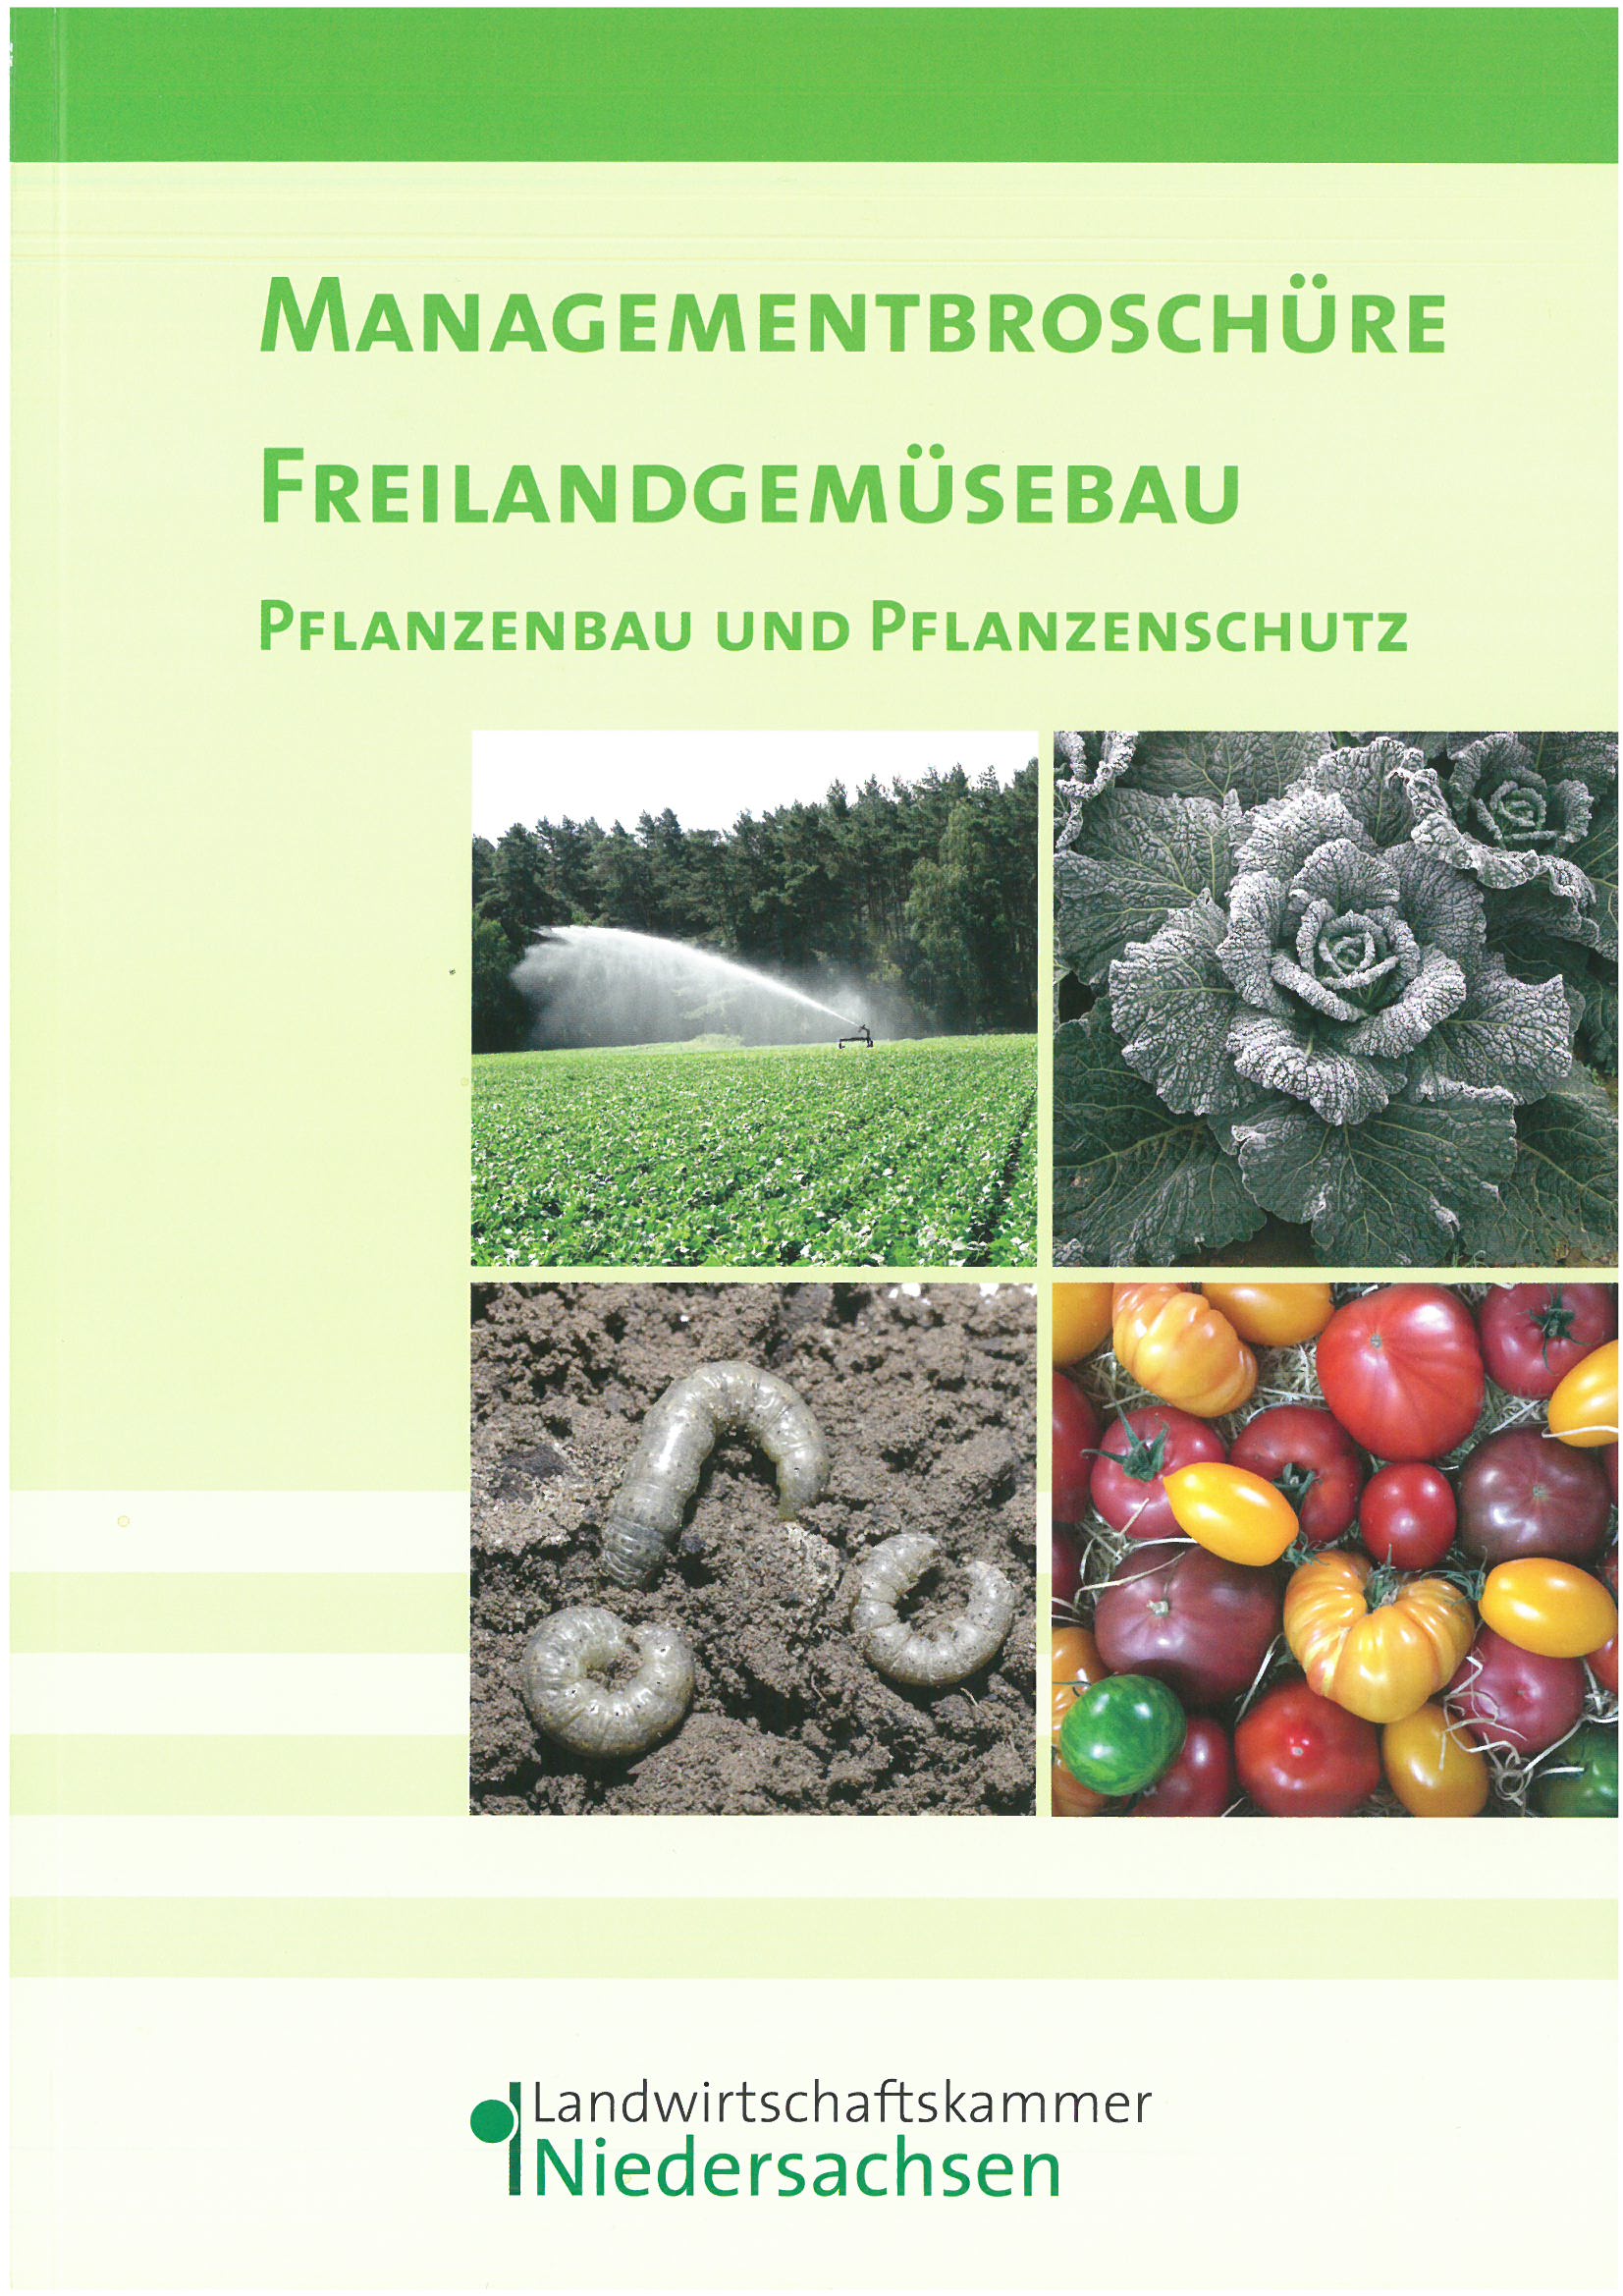 Bild von Hinweise zum Angebot der LWK Niedersachsen - Managementbroschüre_Cover_2019